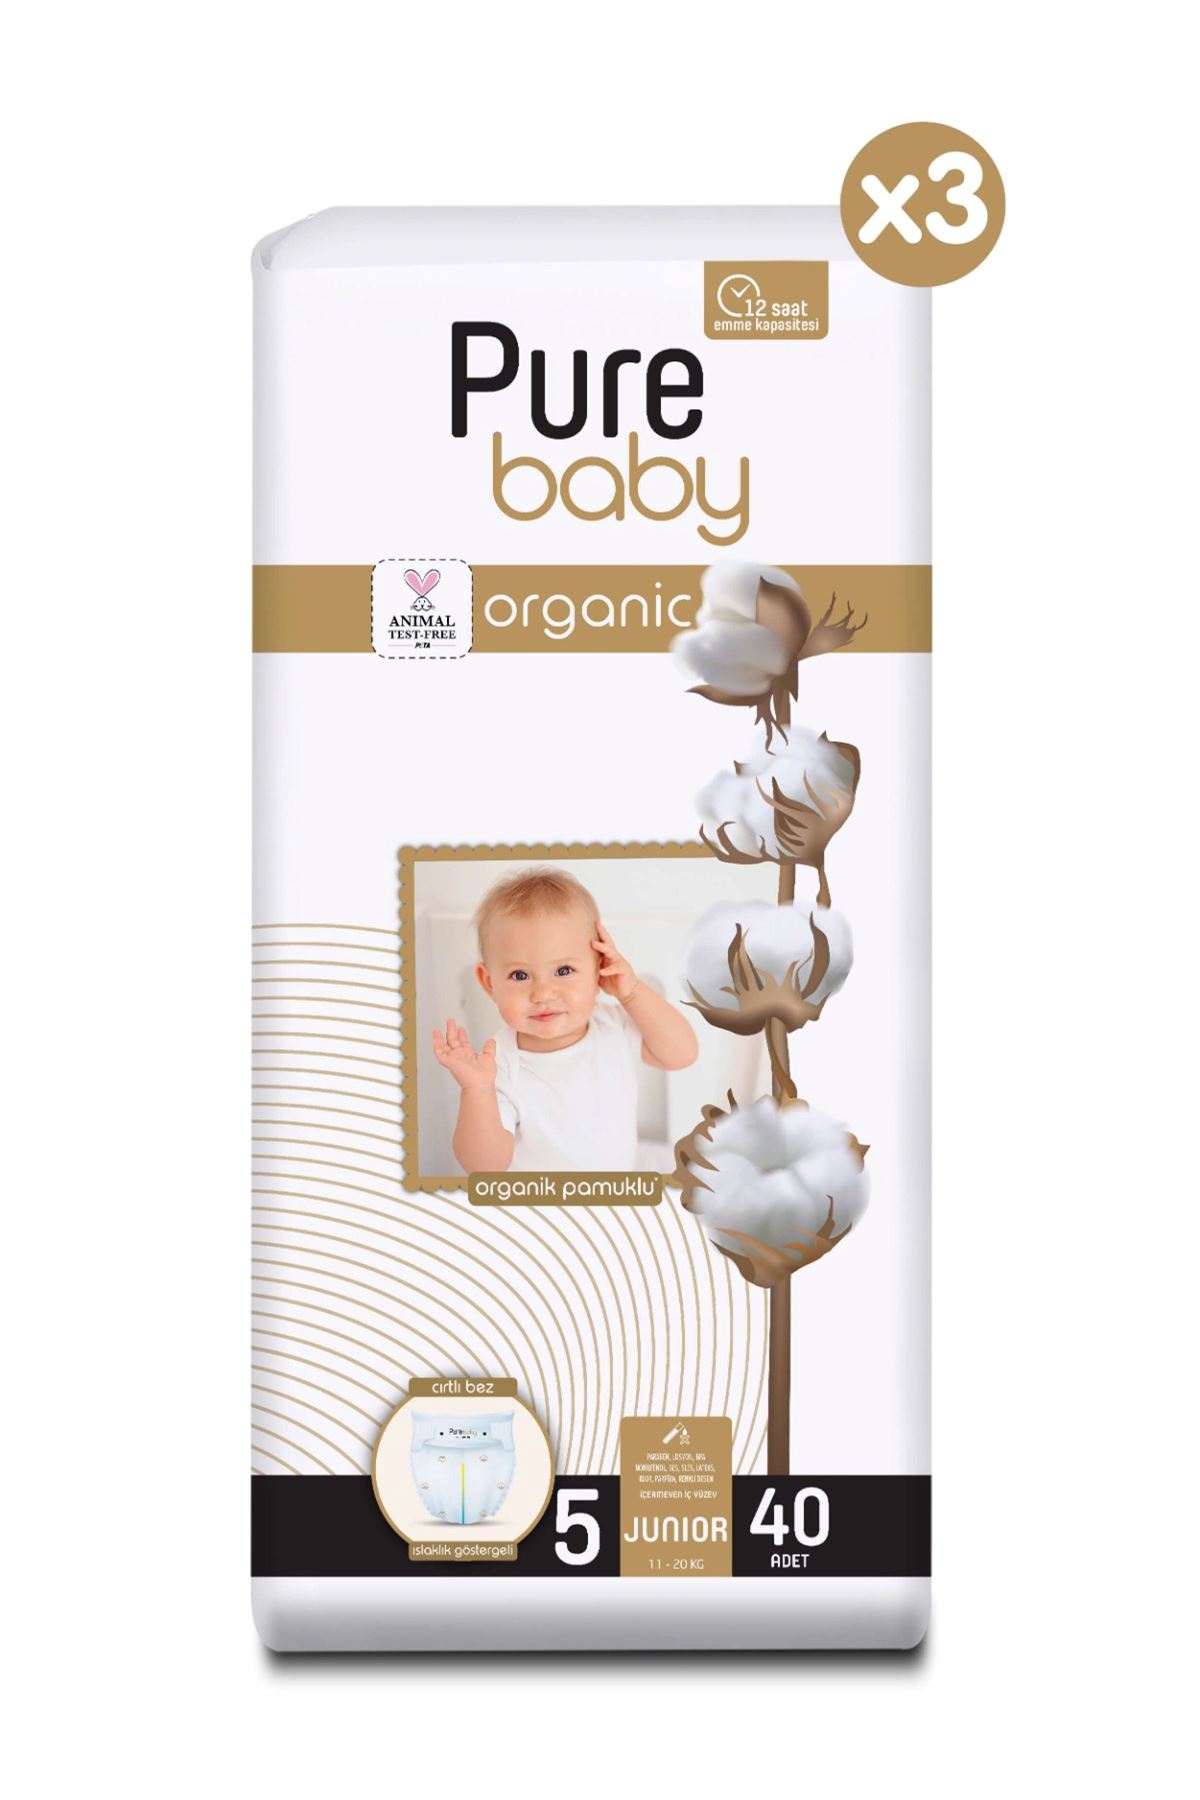 Pure Baby Organik Pamuklu Cırtlı Bez 3'Lü Paket 5 Numara Junior 120 Adet